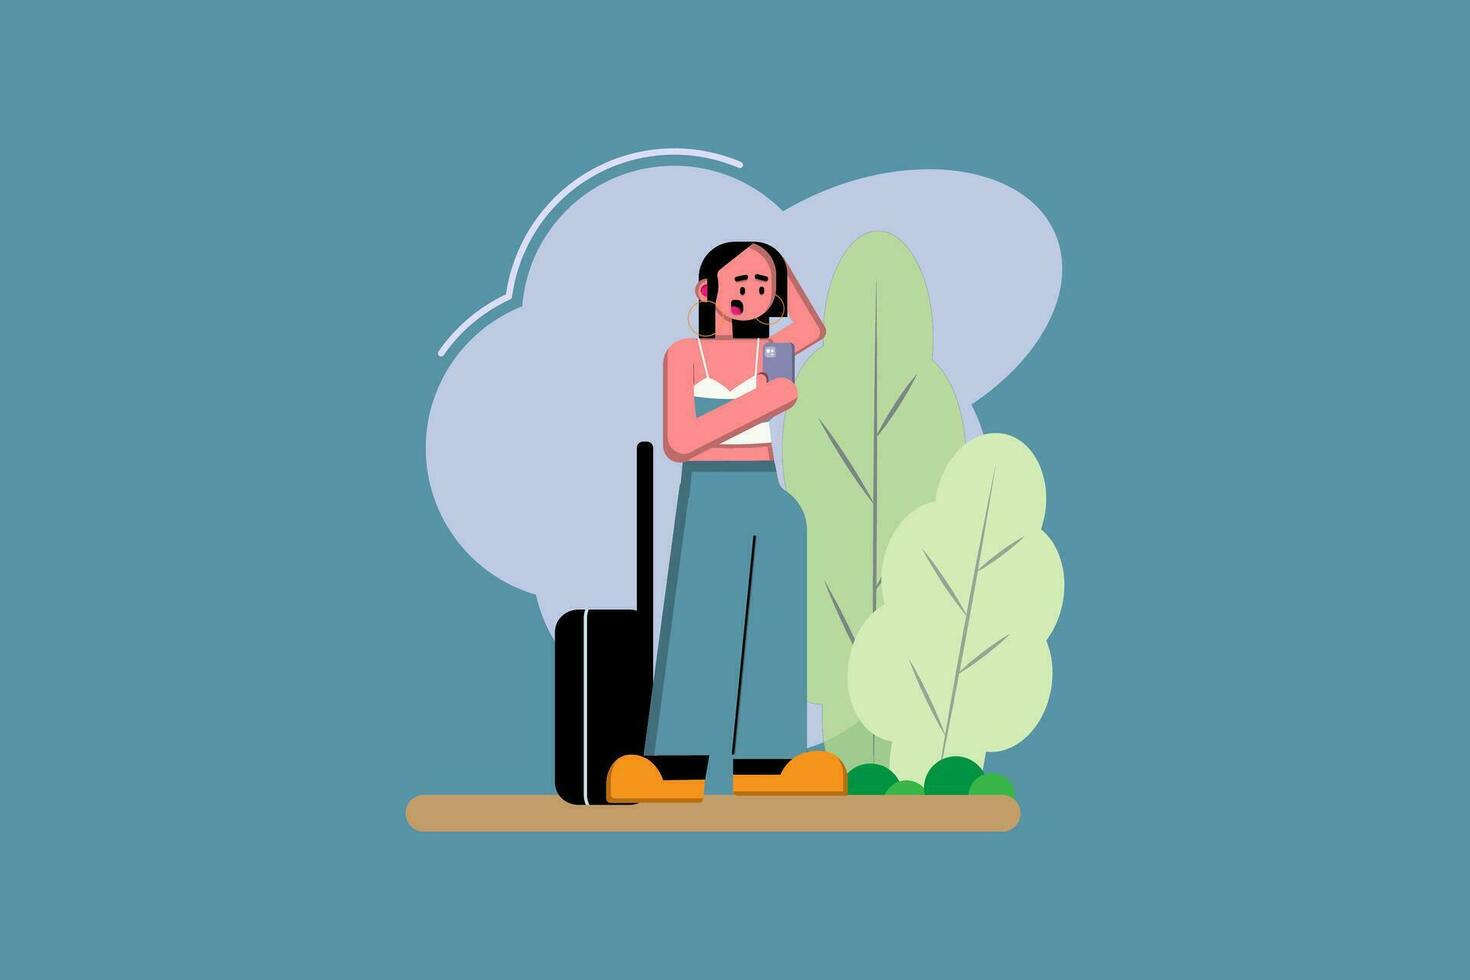 un confuso mujer quiere a viaje que lleva un maleta mientras en pie siguiente a un árbol vector